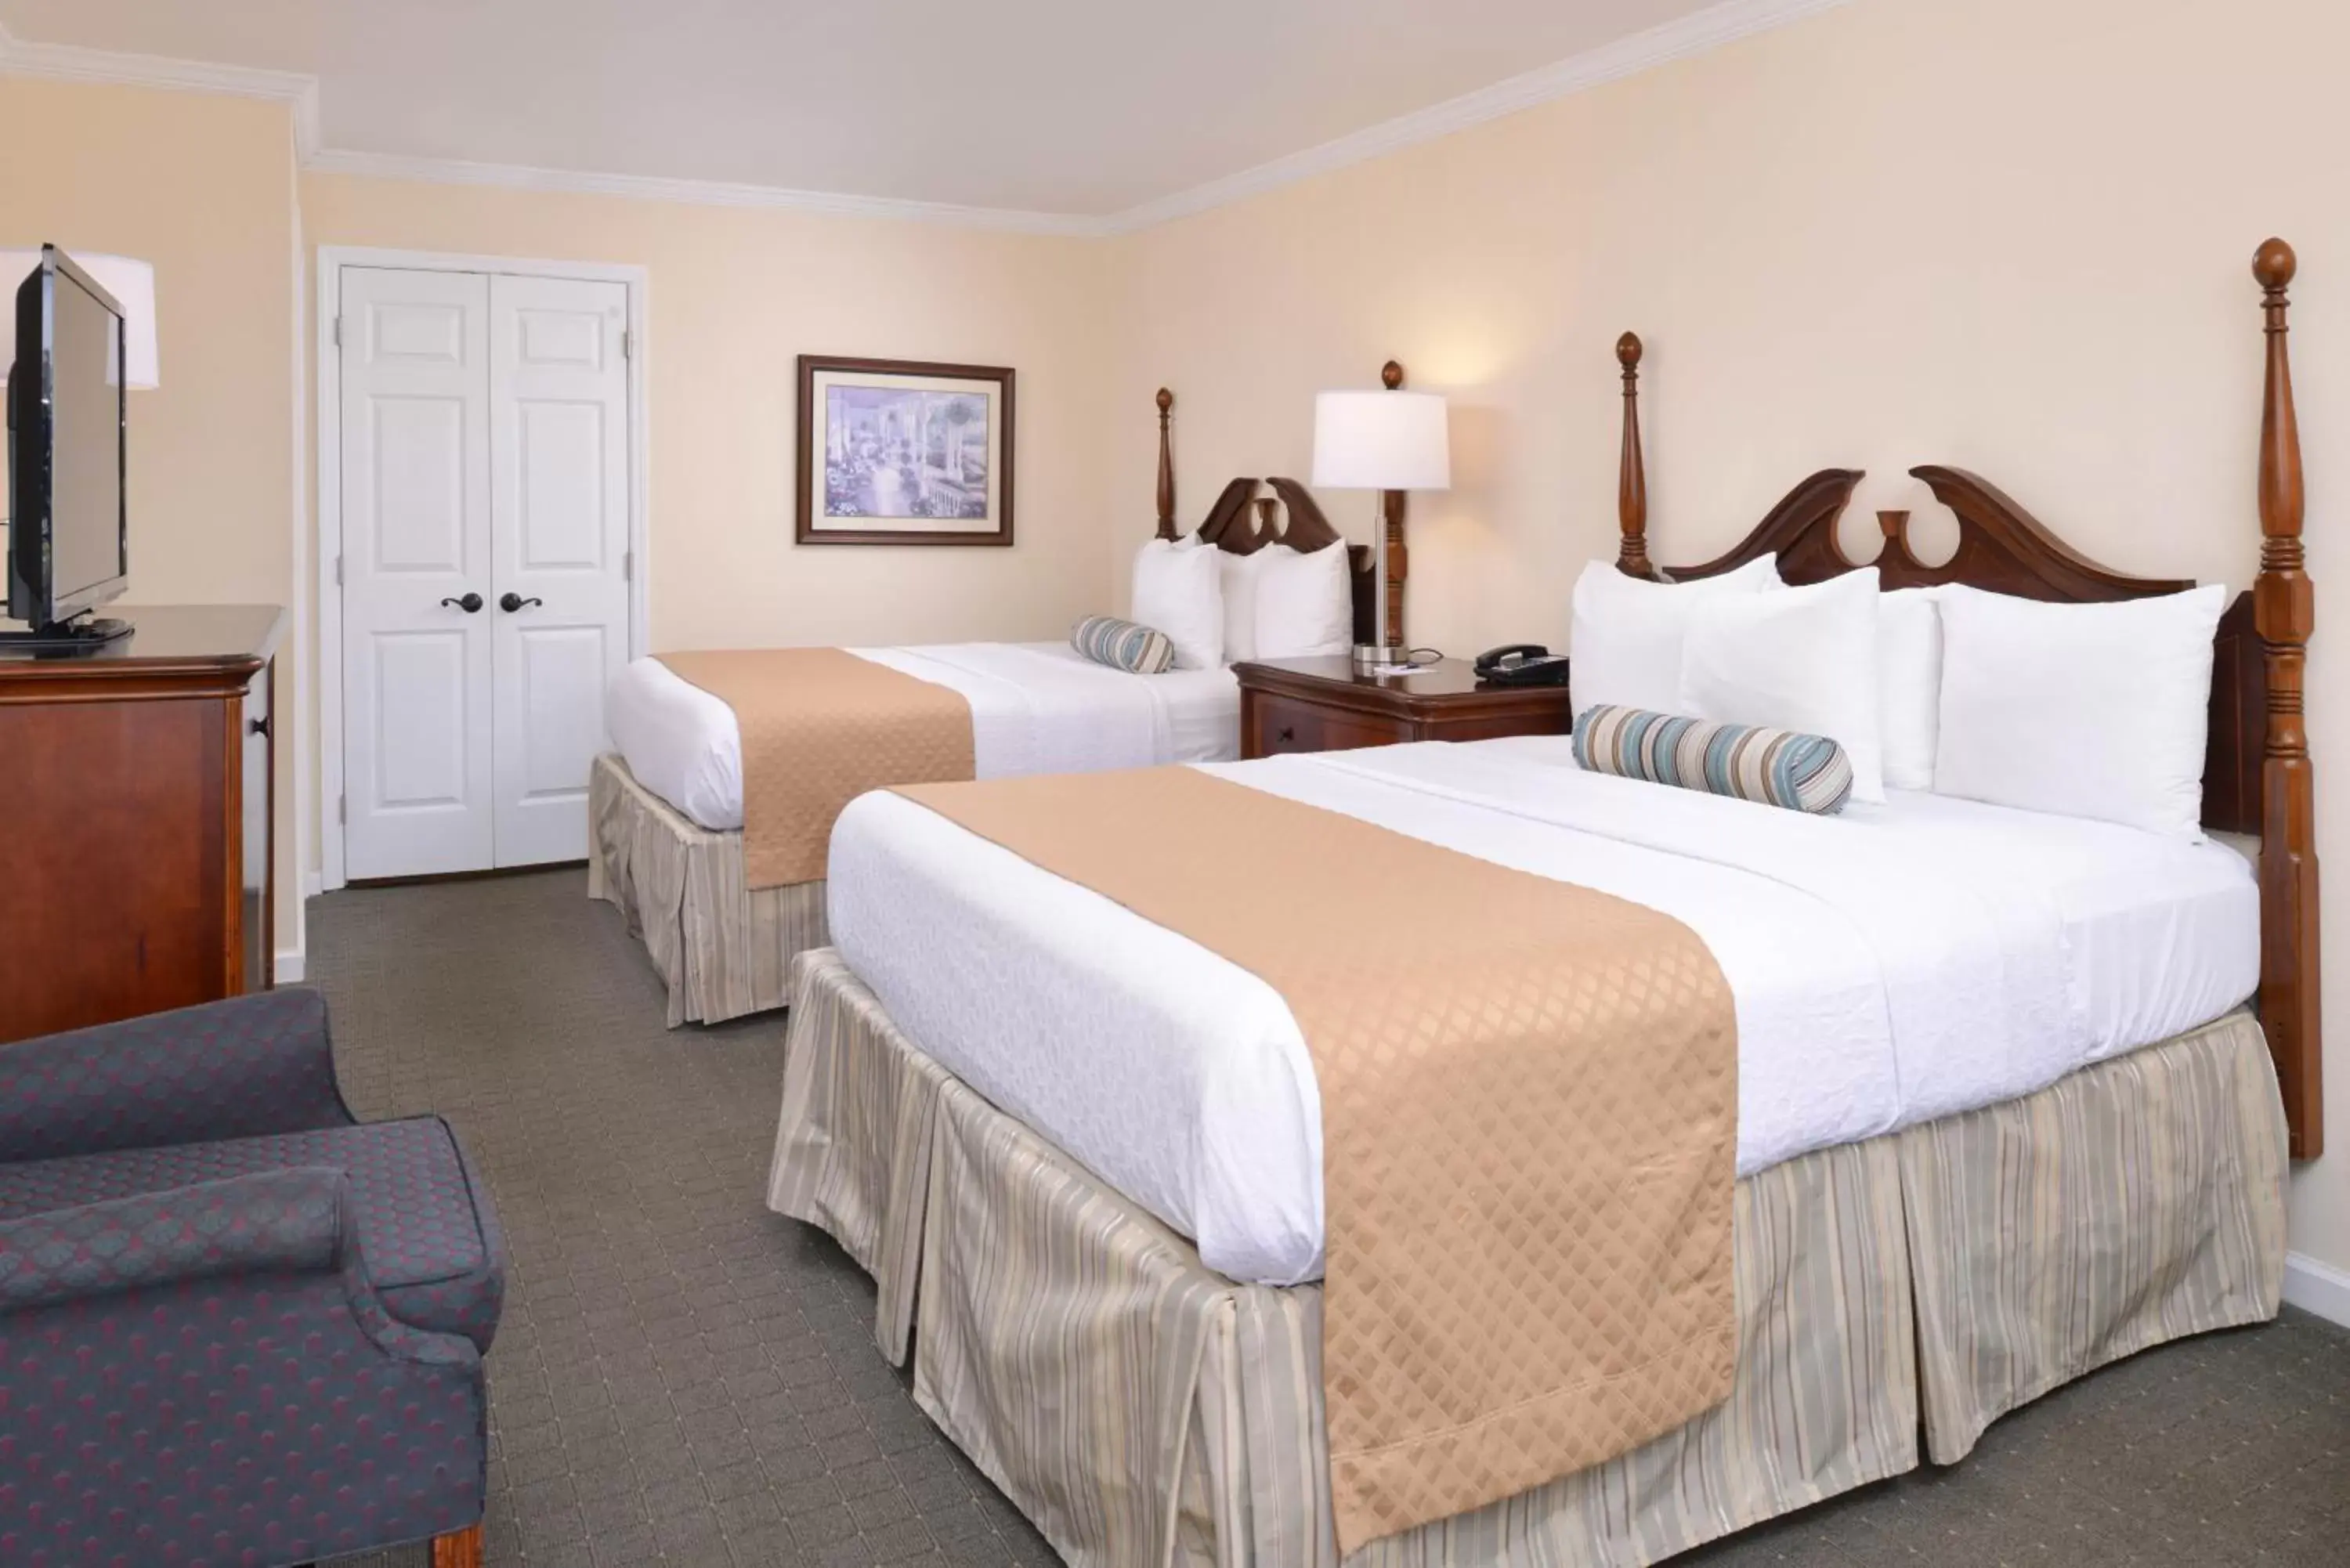 Bedroom, Room Photo in Best Western PLUS Santee Inn